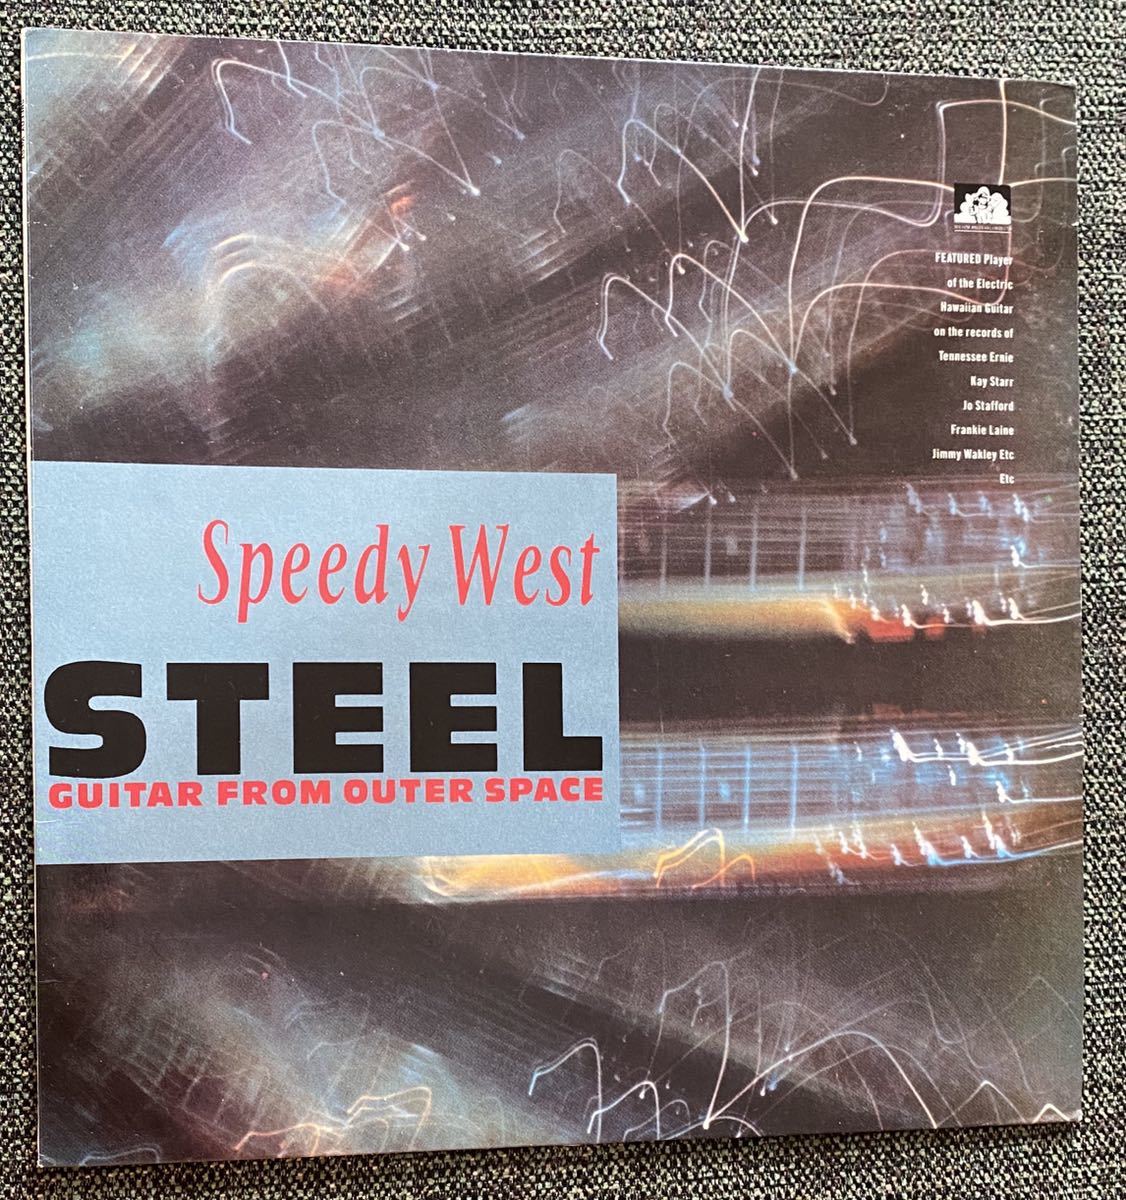 Speedy West LP Steel Guitar From Outer Space steel гитара Western Swing контри-рок 